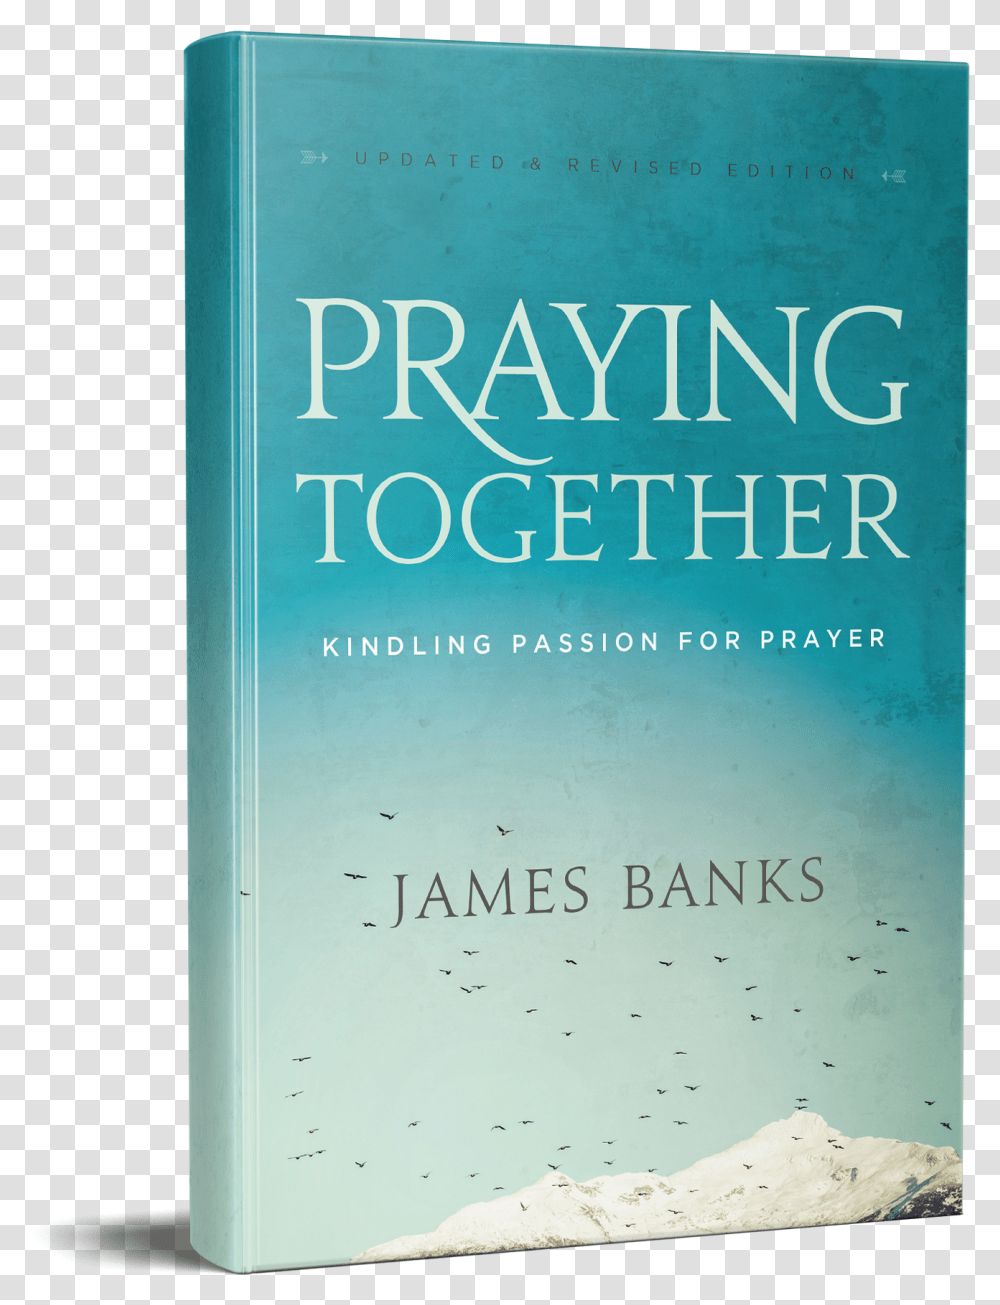 Kindling Passion For Prayer Download, Book, Novel Transparent Png